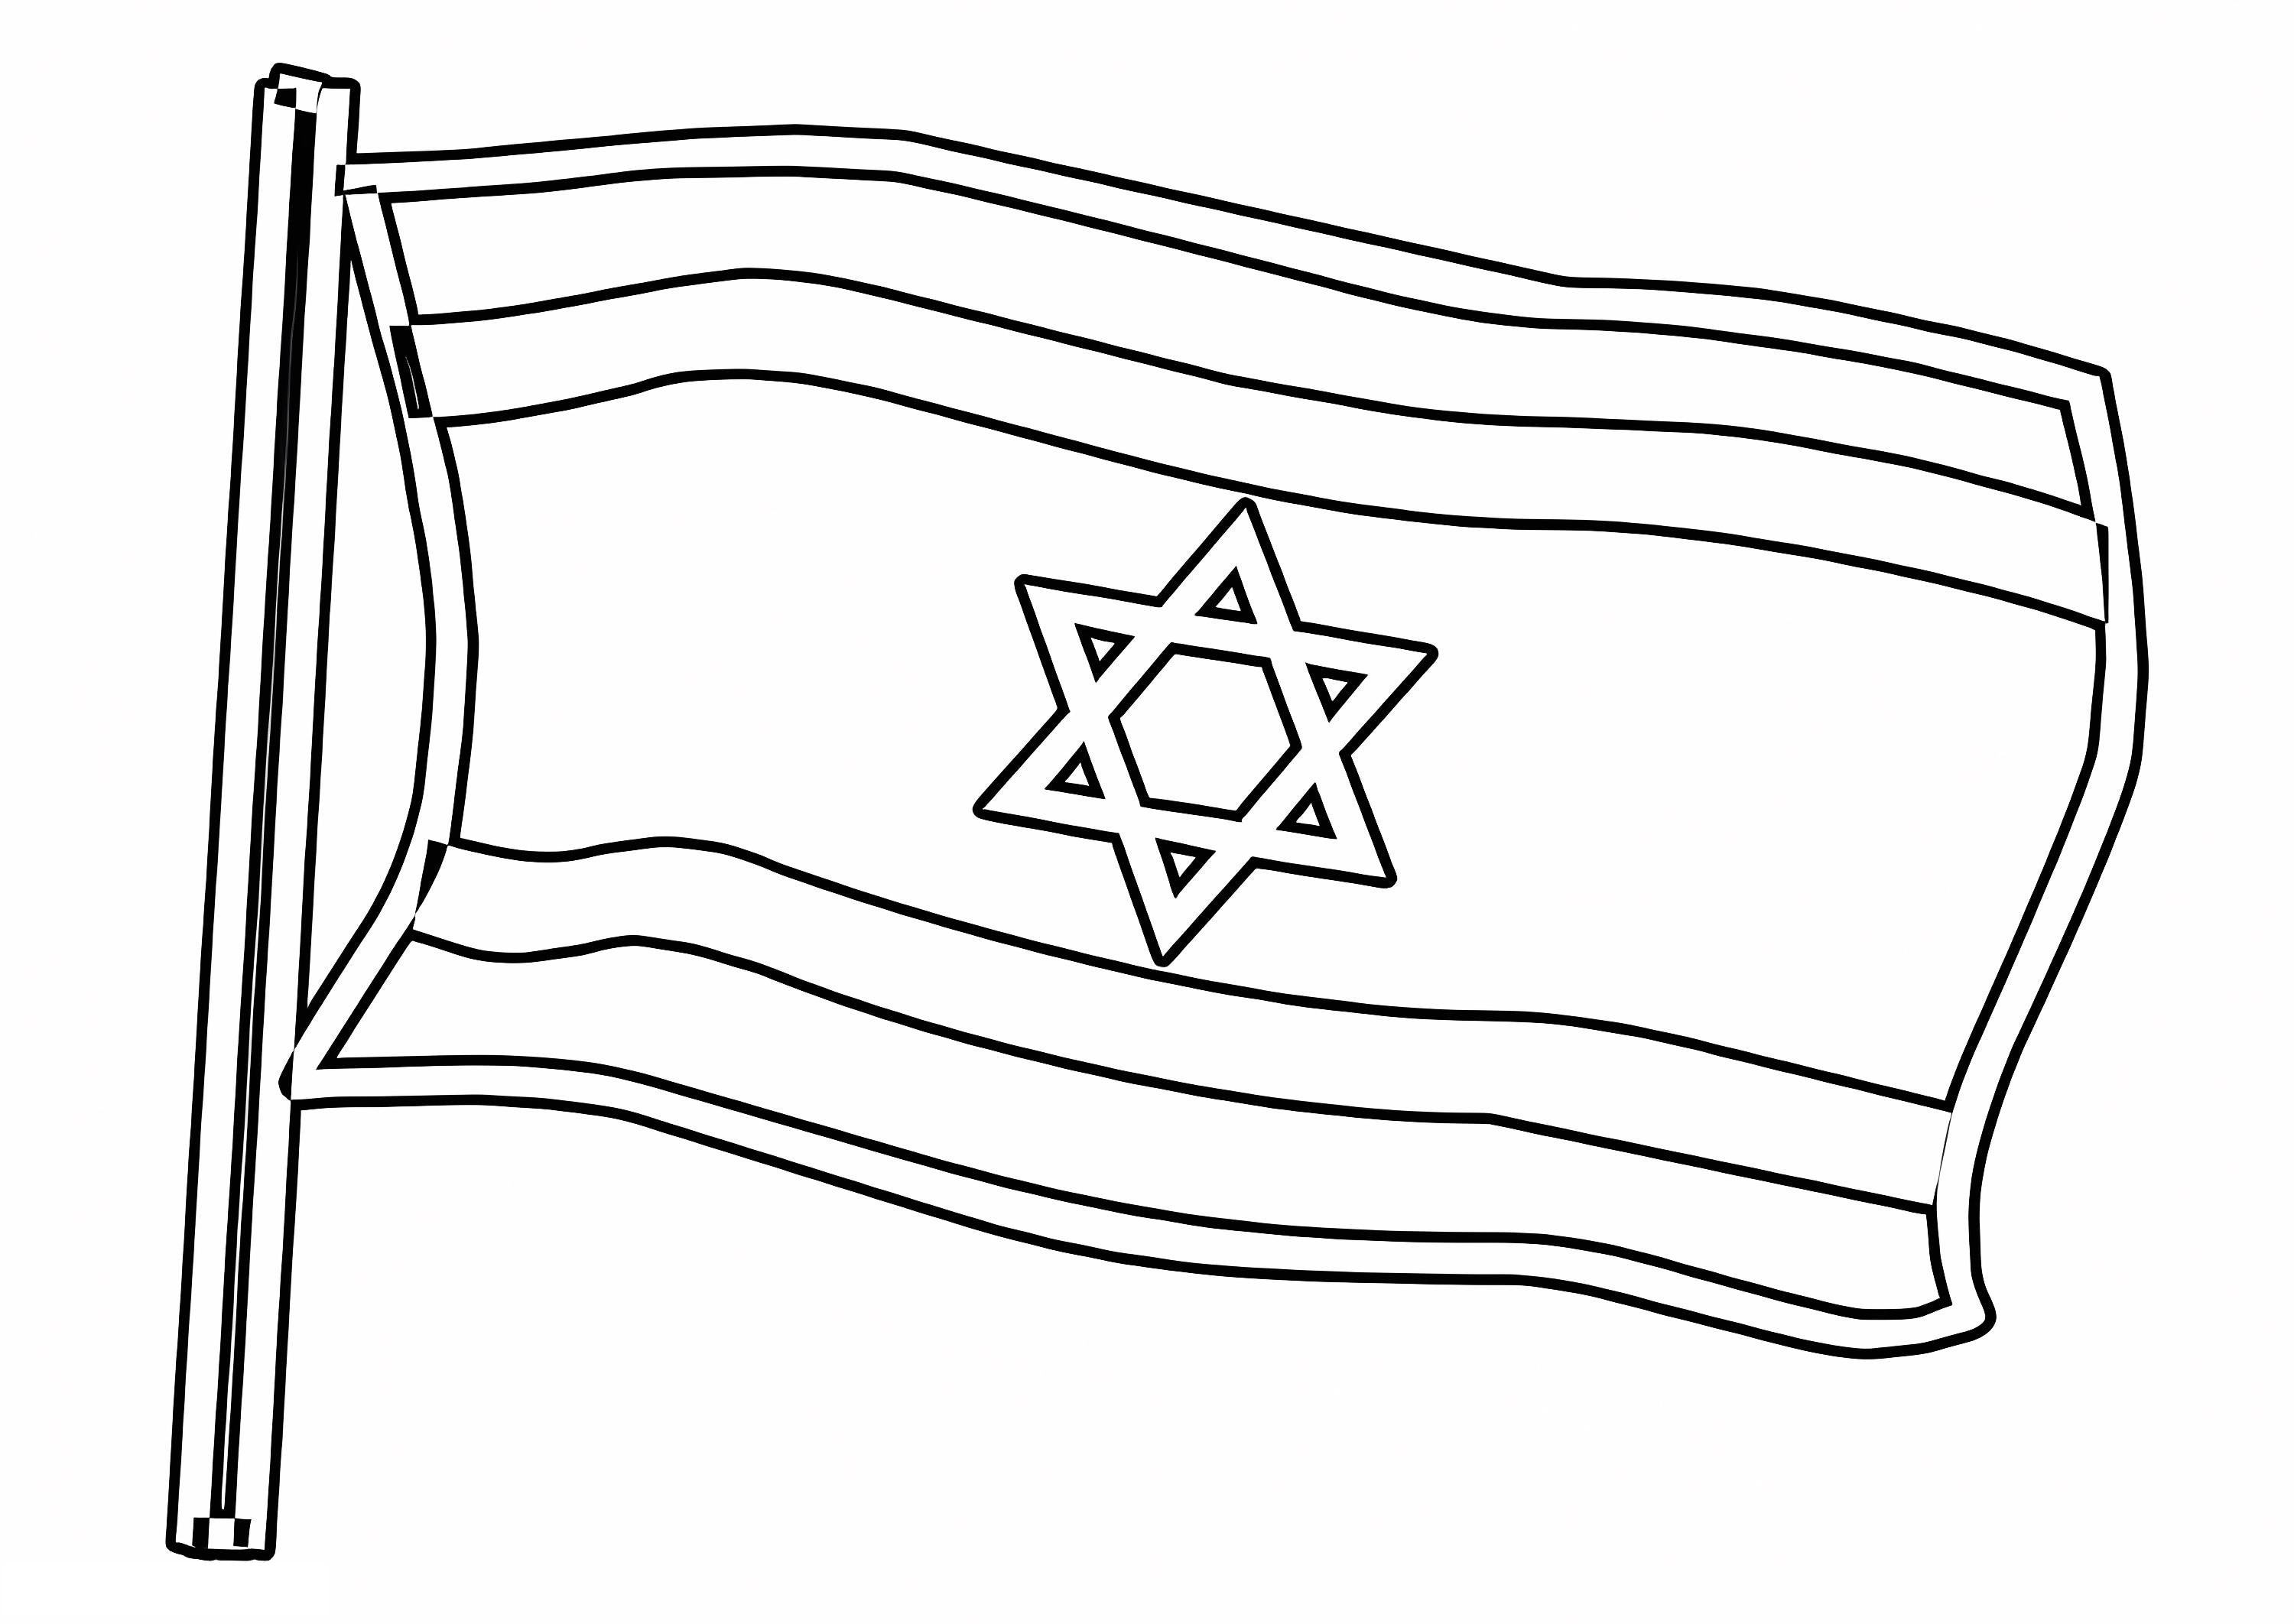 Descubra a Magia das Cores na Bandeira de Israel: Impressão e Coloração Divertidas